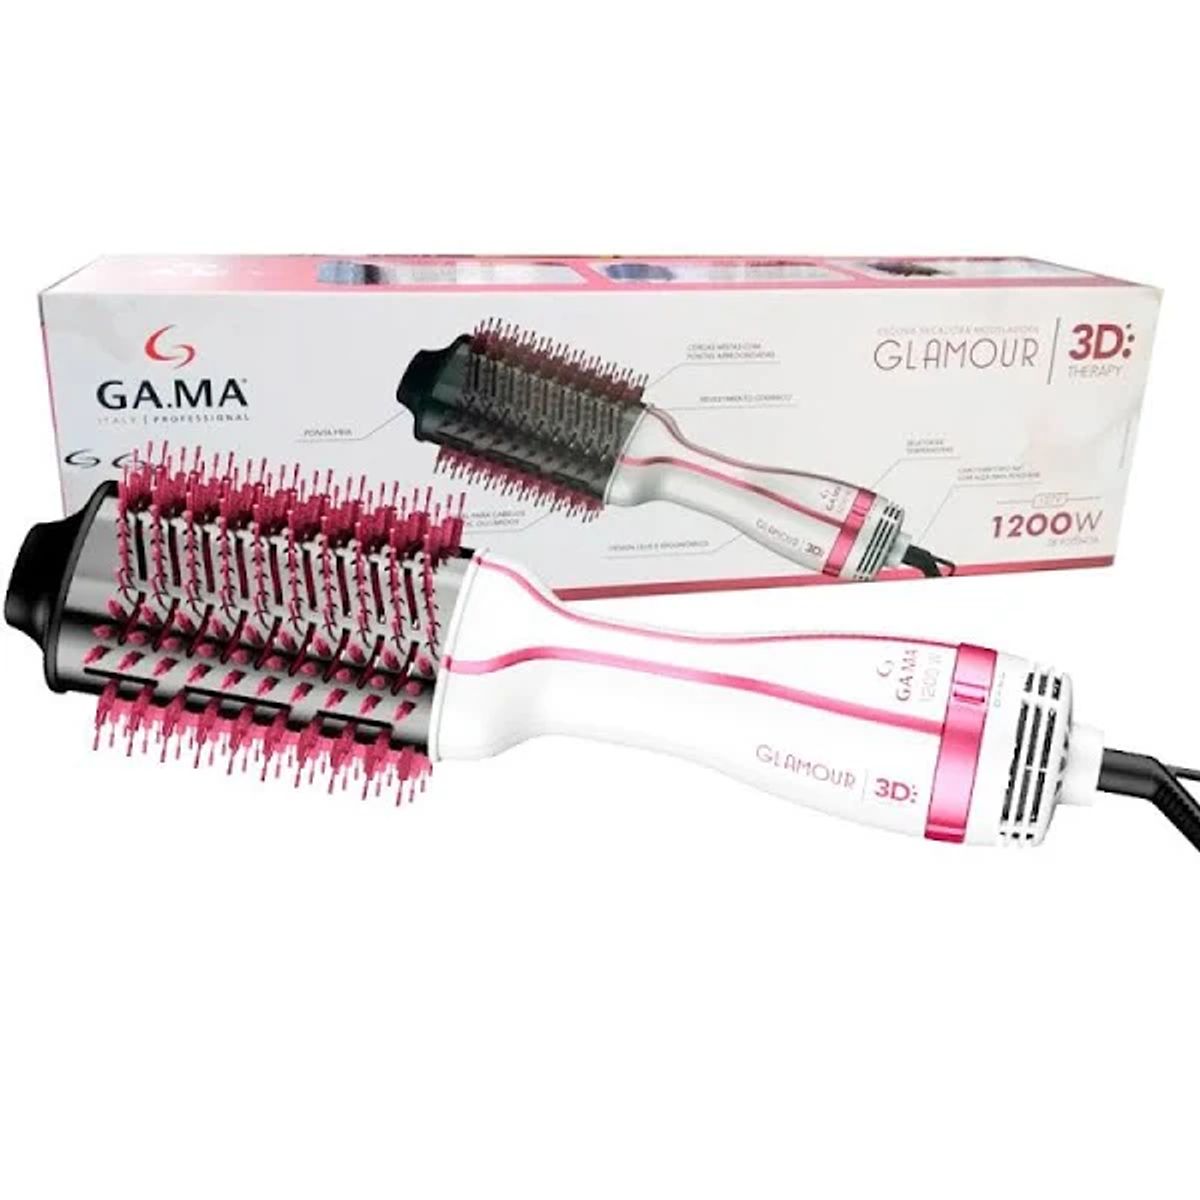 Escova Secadora GA.MA Glamour Pink Brush 3D127v 1200W